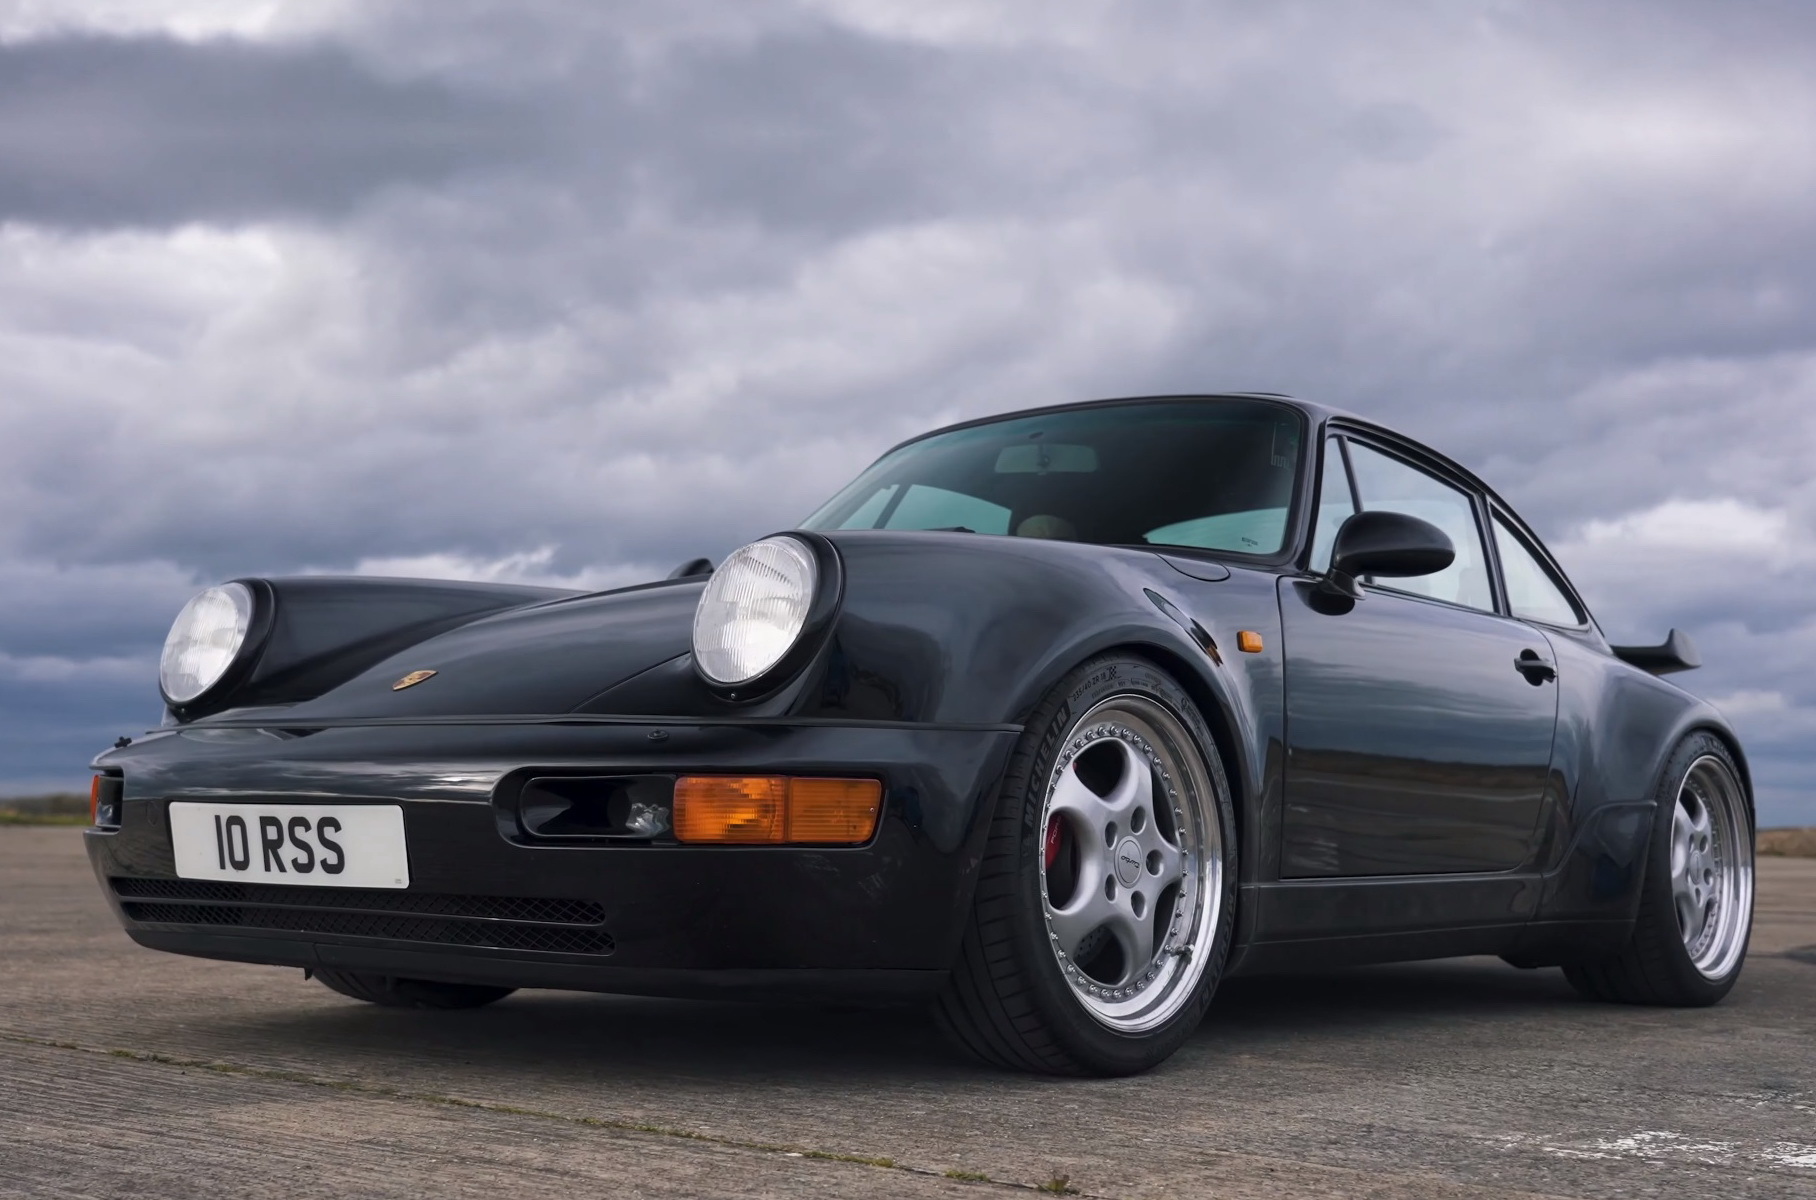 Видео: семь поколений Porsche 911 Turbo сразились в дрэге